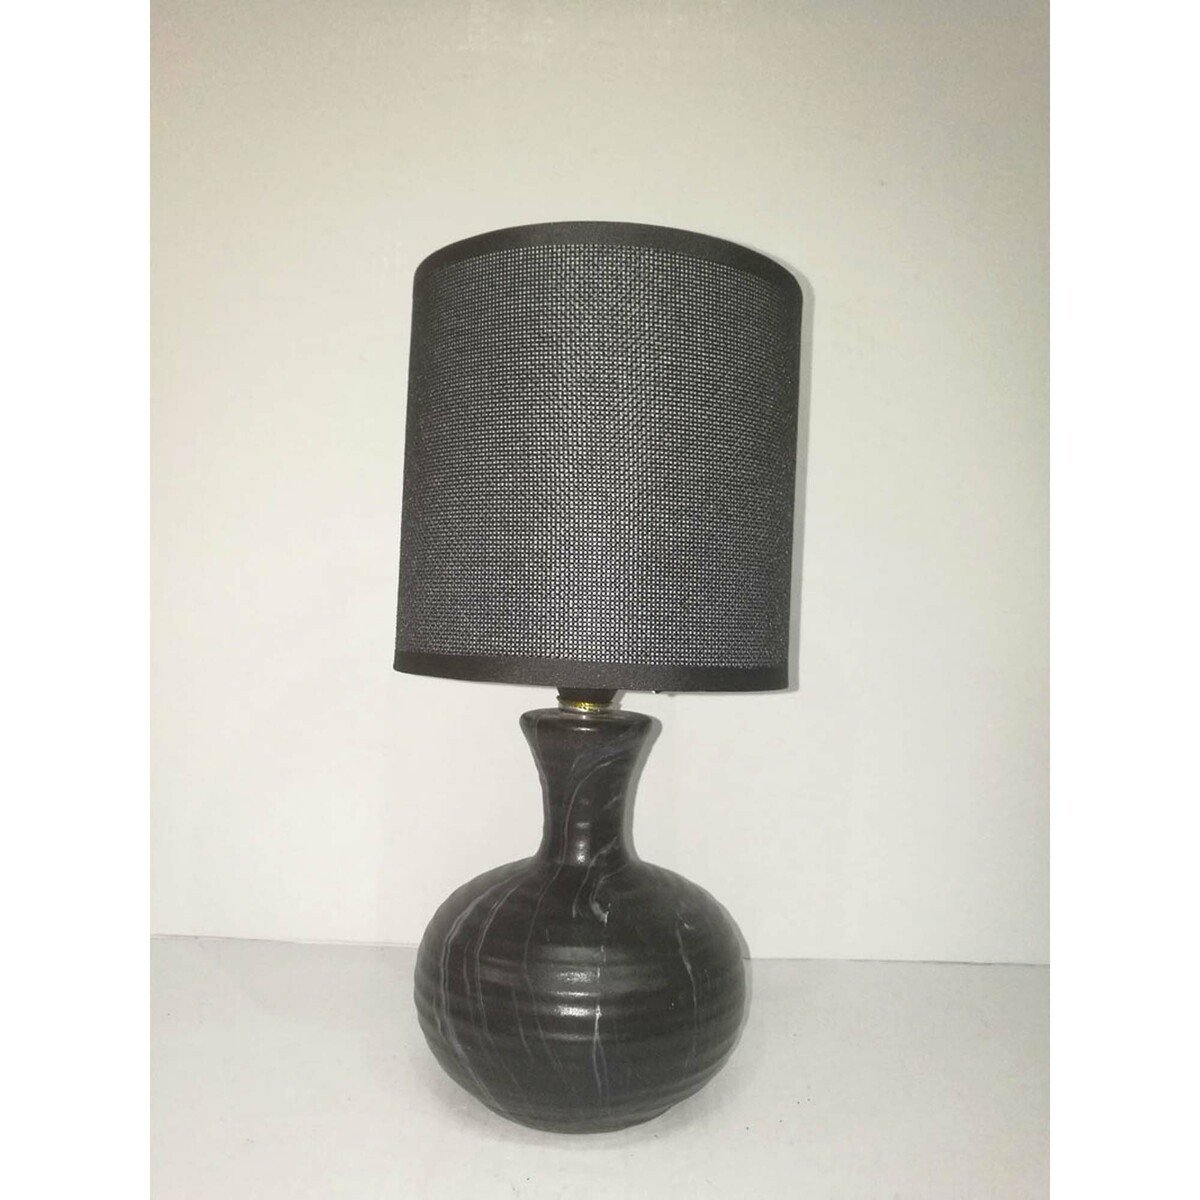 Maple Leaf Ceramic Table Lamp HS8145PRM 13x27cm Assorted